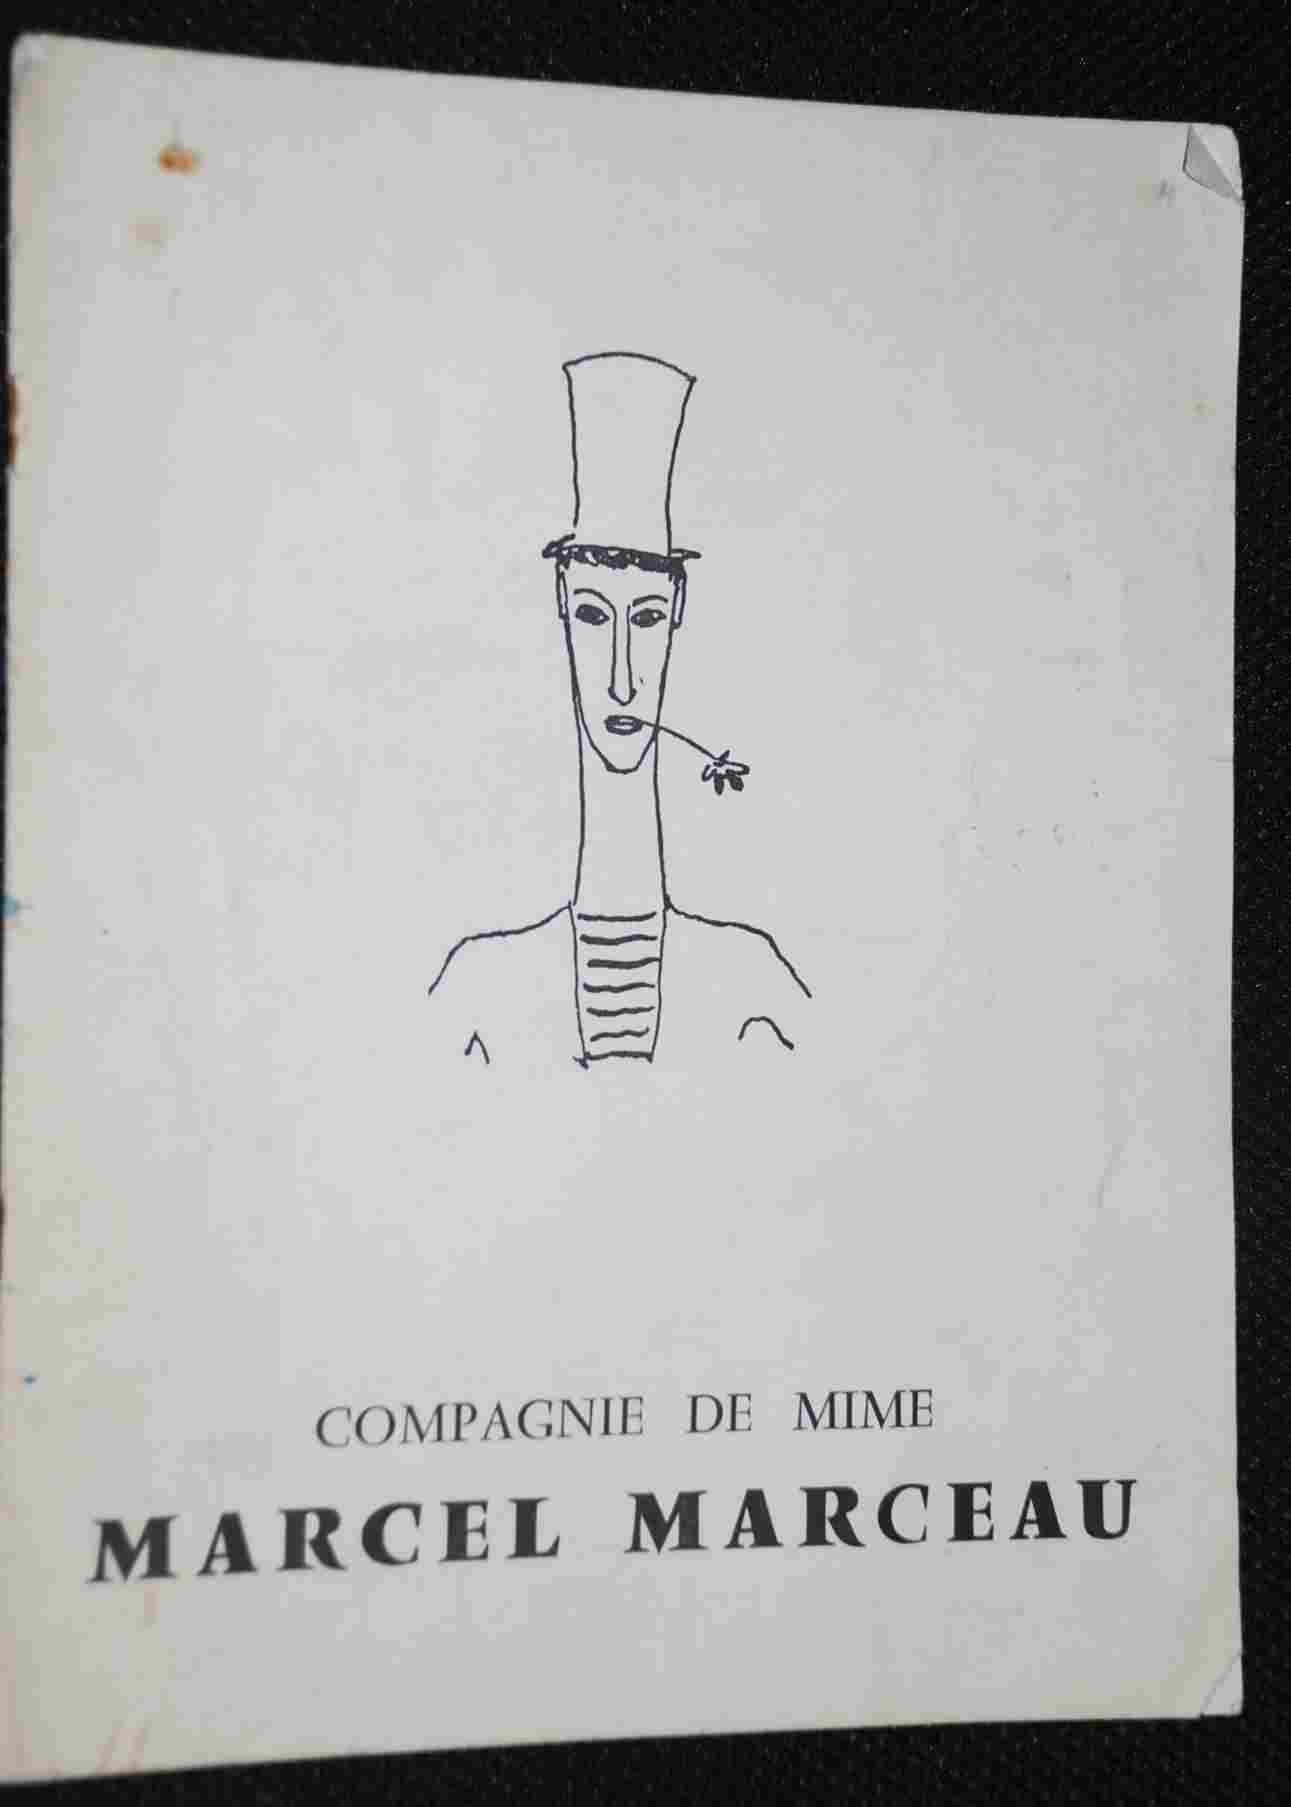 La Compagnie de Mime Marcel Marceau